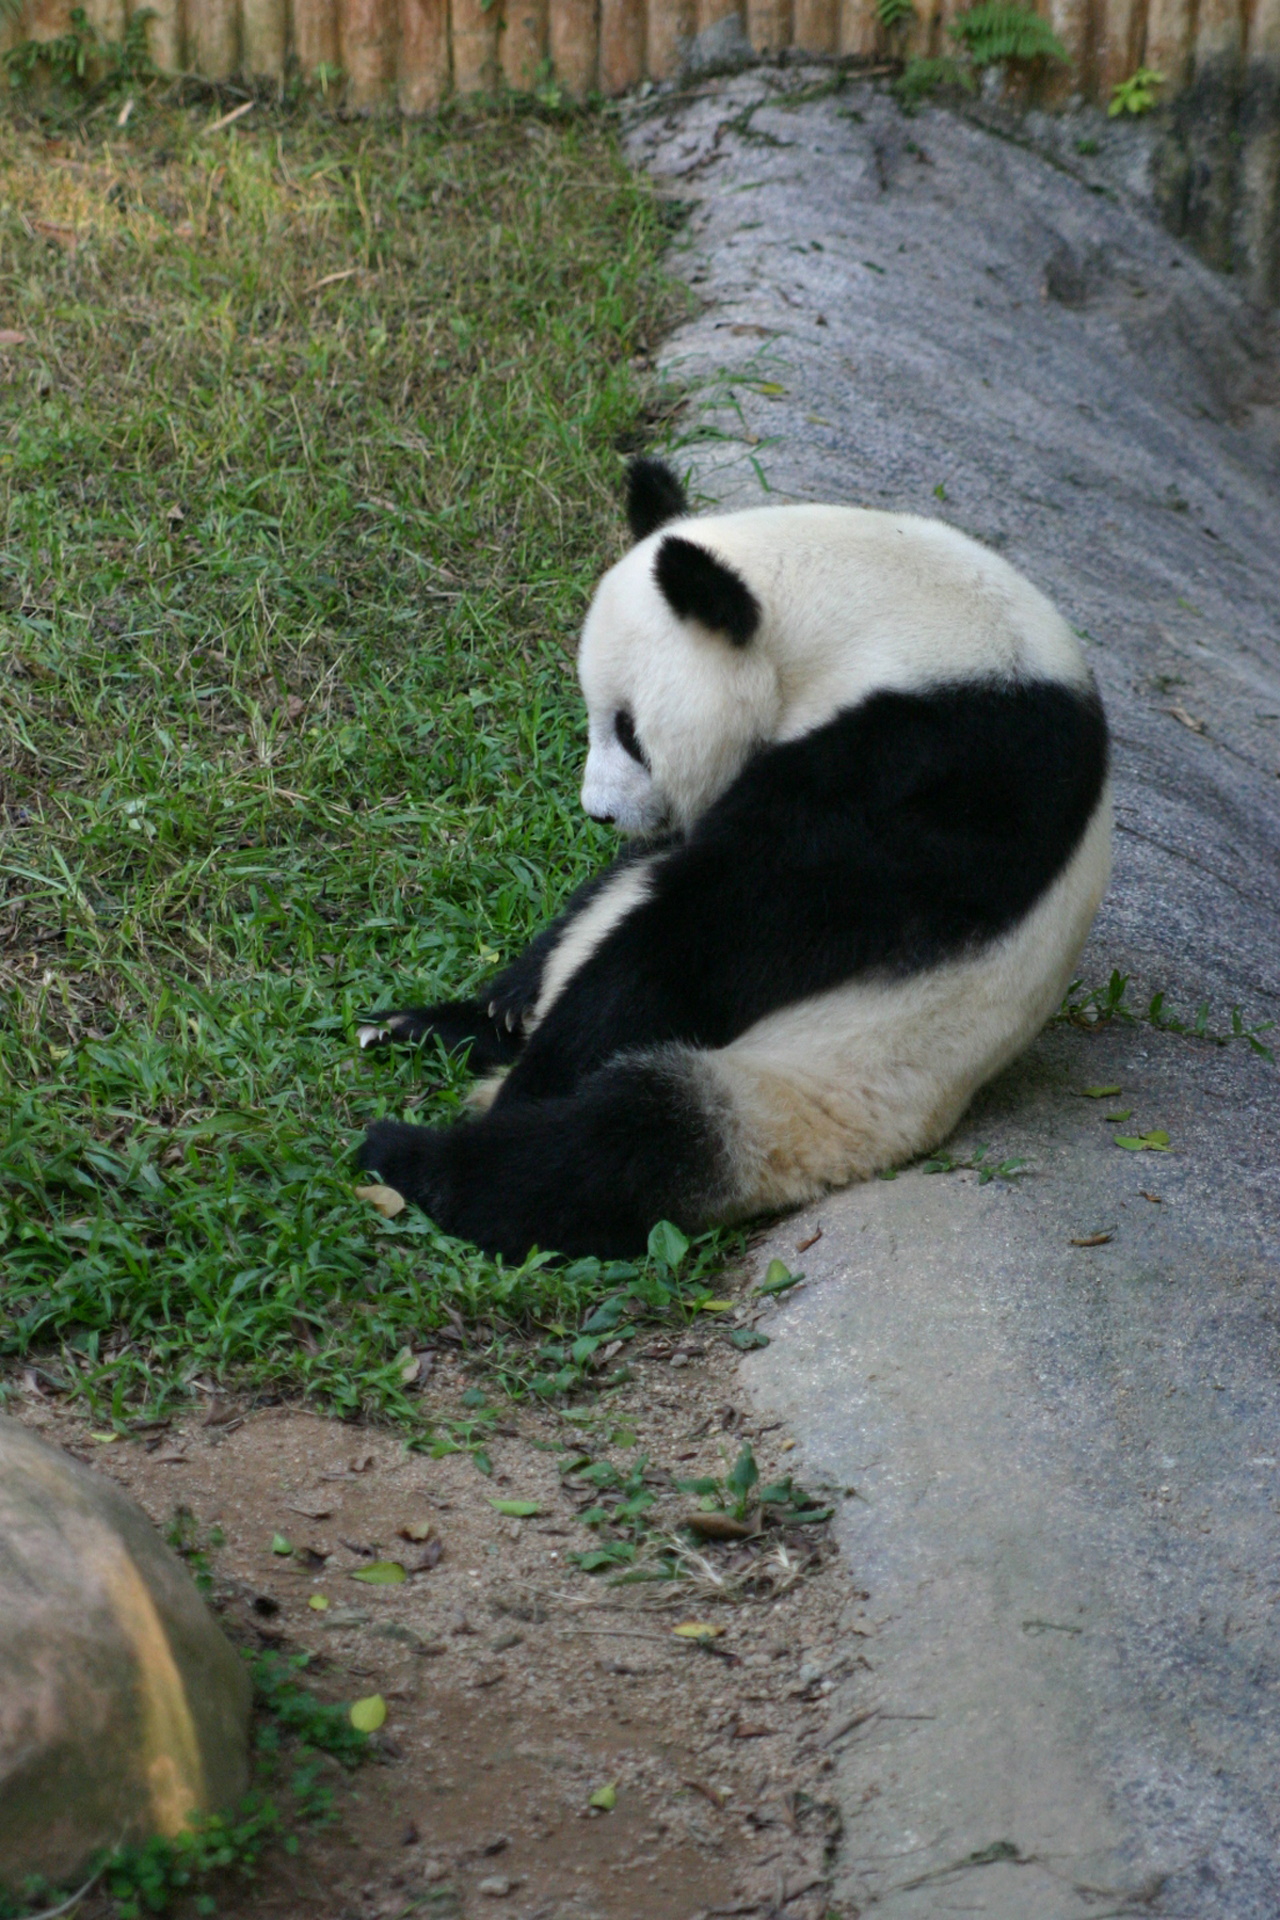 <p><strong>Панда</strong></p>

<p>Ако чуждестранен зоопарк иска да отглежда и показва панда, той трябва да наеме животното от китайското правителство за 10 години. Годишната такса може да възлиза на приблизително 1 млн. долара, а ако панда умре през това време от човешка грешка, Китай налага глоба от около 400 хил. долара.</p>